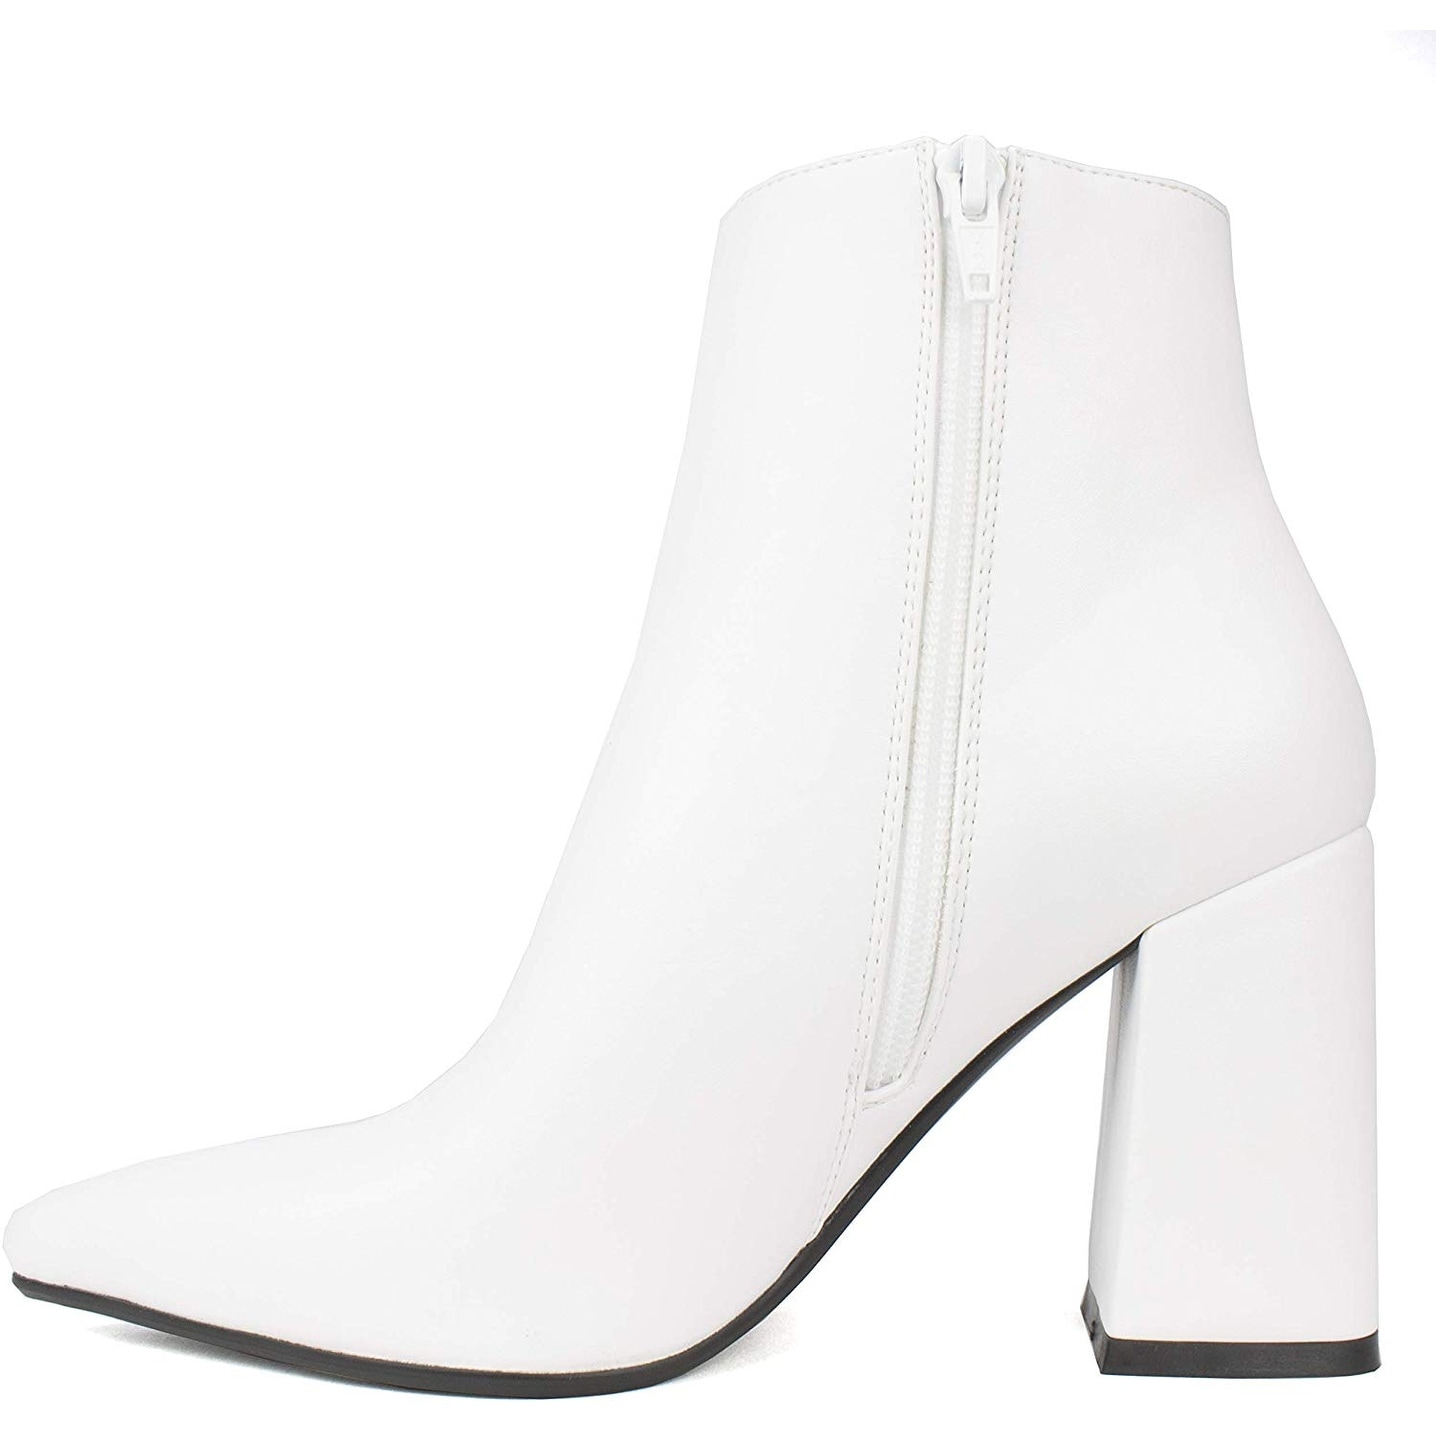 white high heels for kids